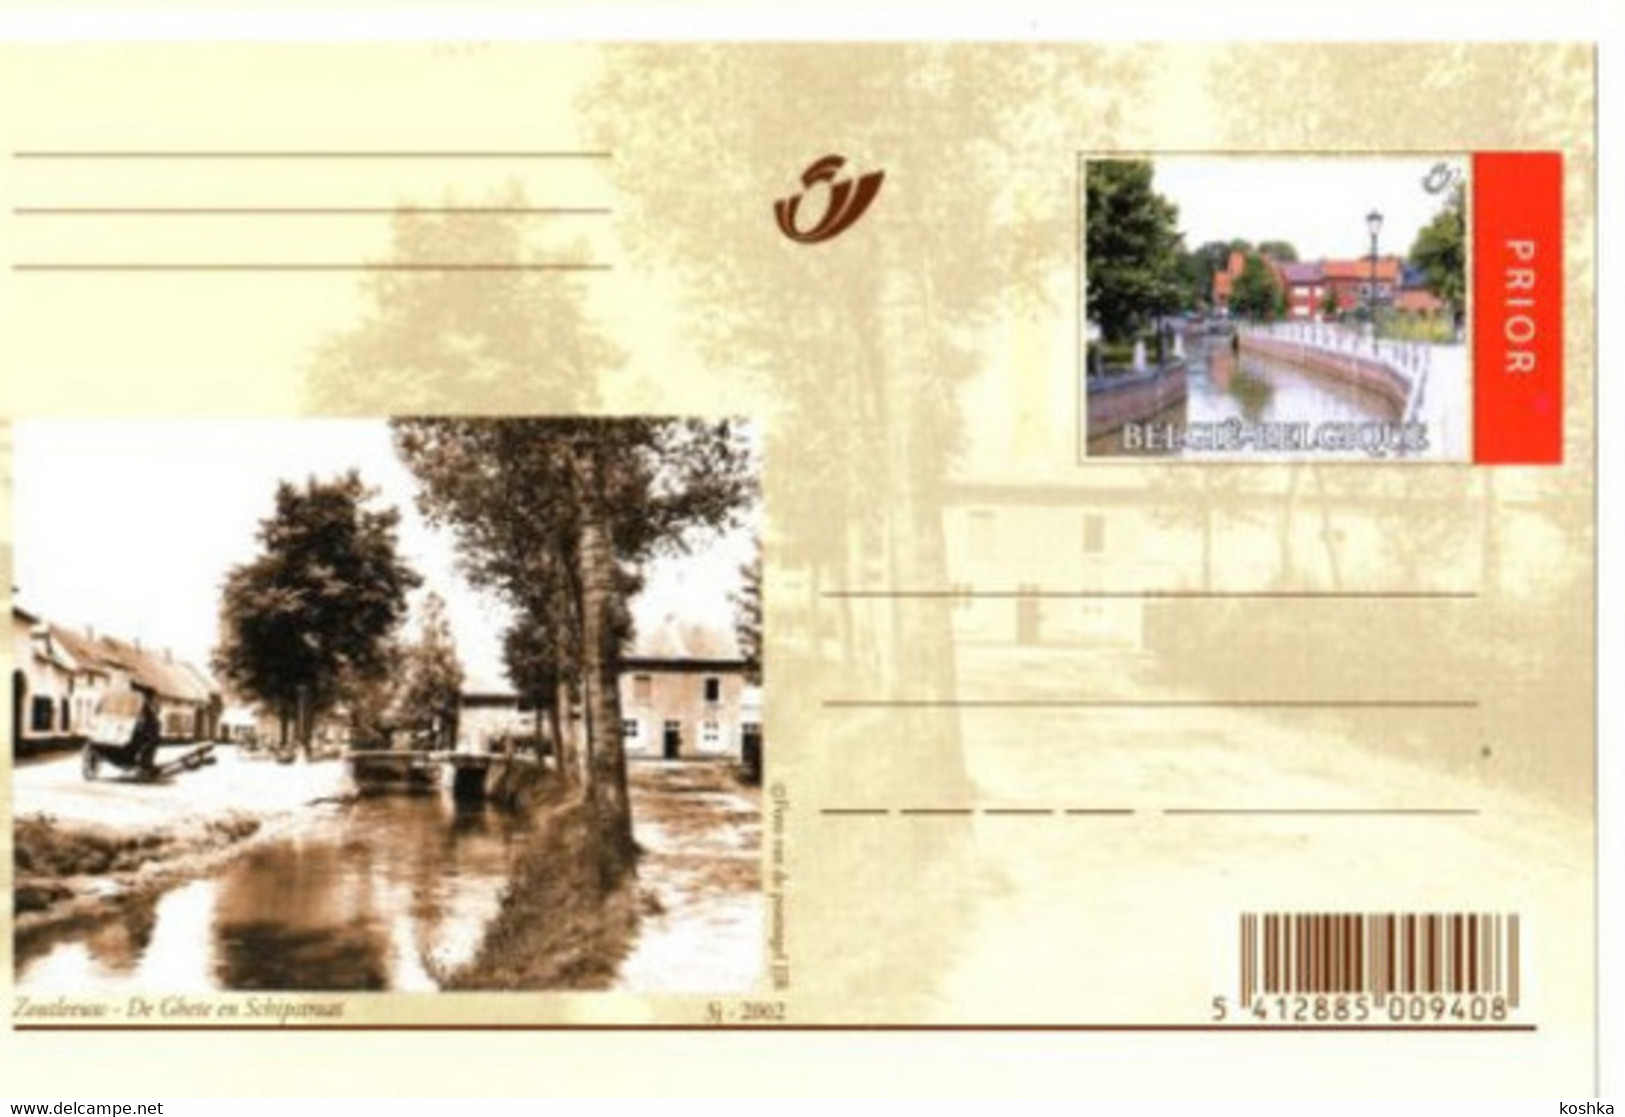 ZOUTLEEUW - De Ghete En Schipstraat - Vroeger En In 2002 - Gele Briefkaart - Niet Verzonden - Nr 3J 2002 - Zoutleeuw